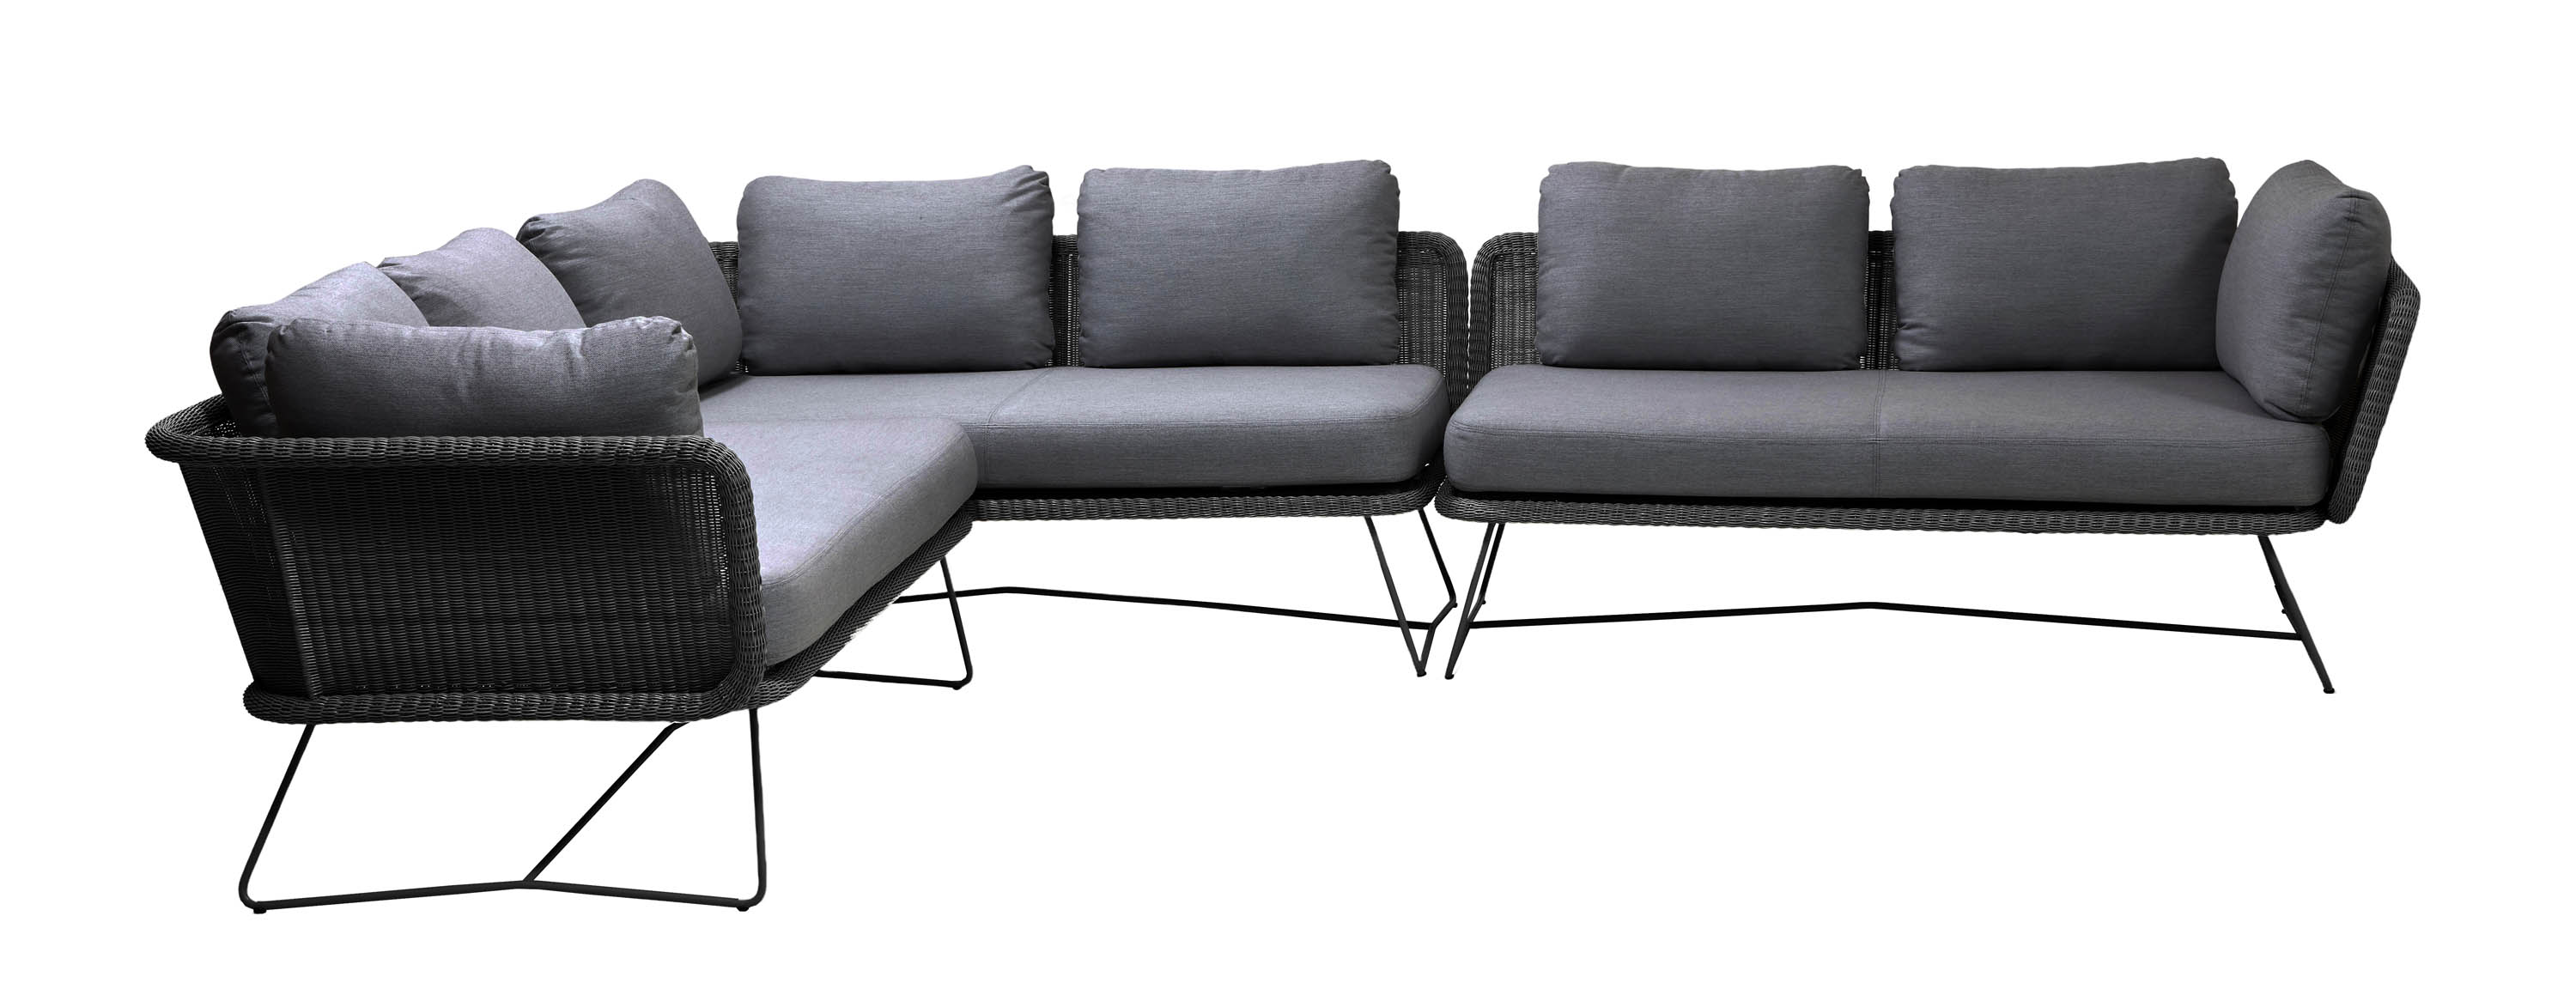 Cane-line Horizon sofagruppe 3st 2-sitsavslut Grå med grå pute